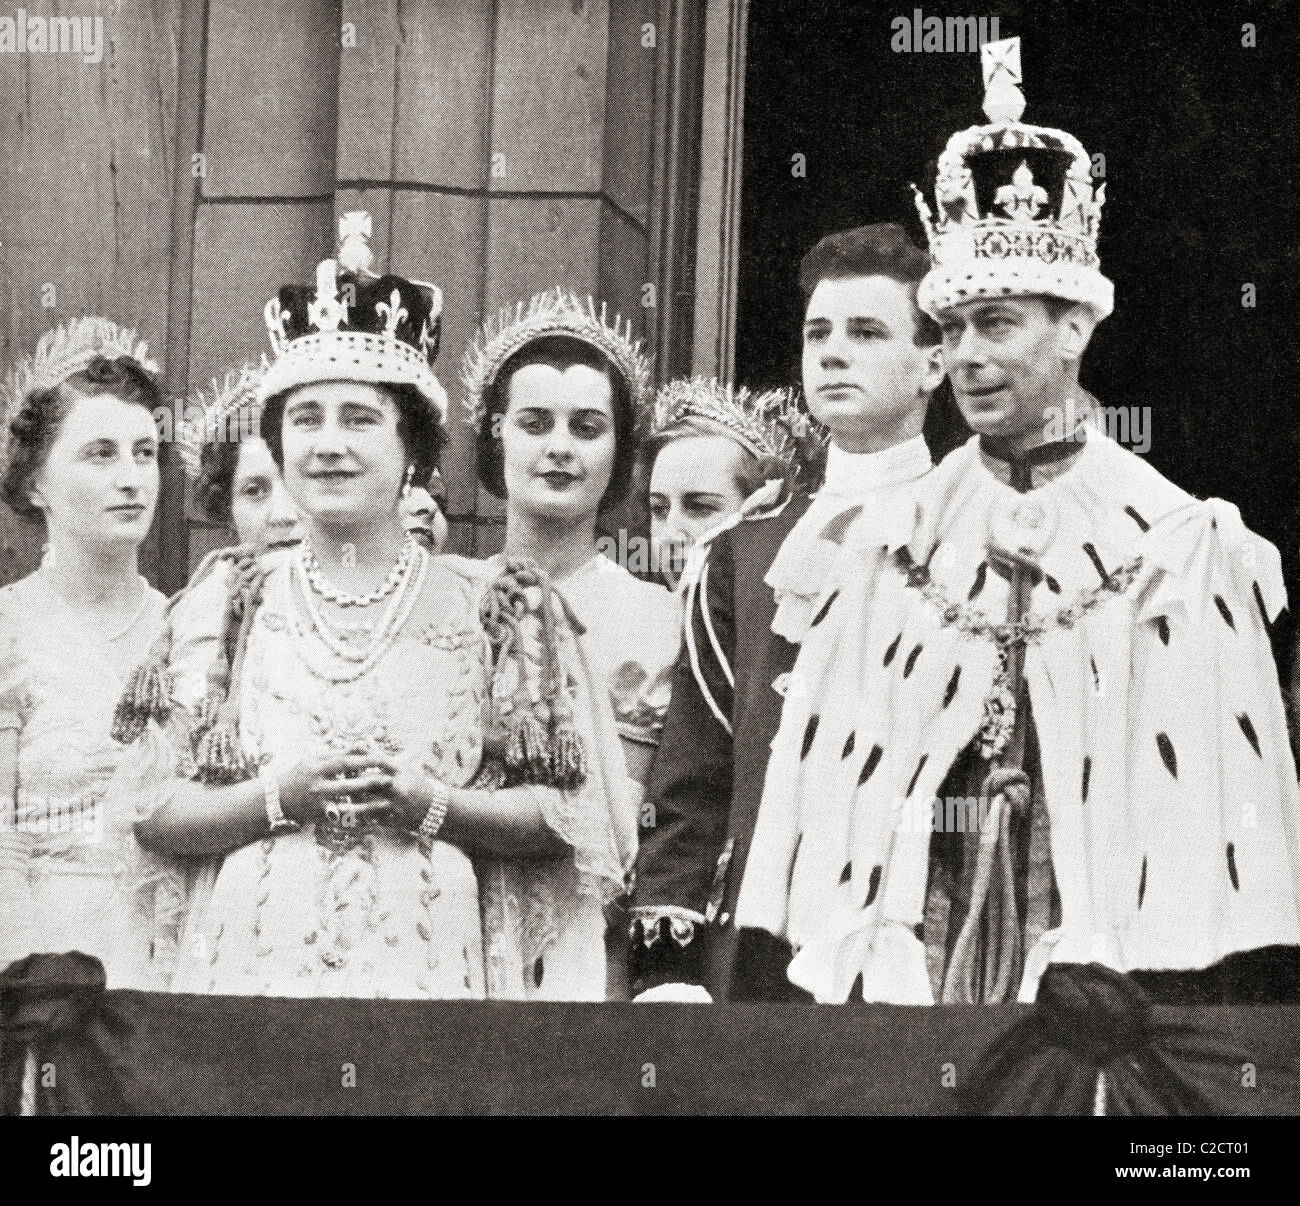 Le roi George VI et la reine Elizabeth sur le balcon de Buckingham Palace après leur couronnement en 1937. Banque D'Images